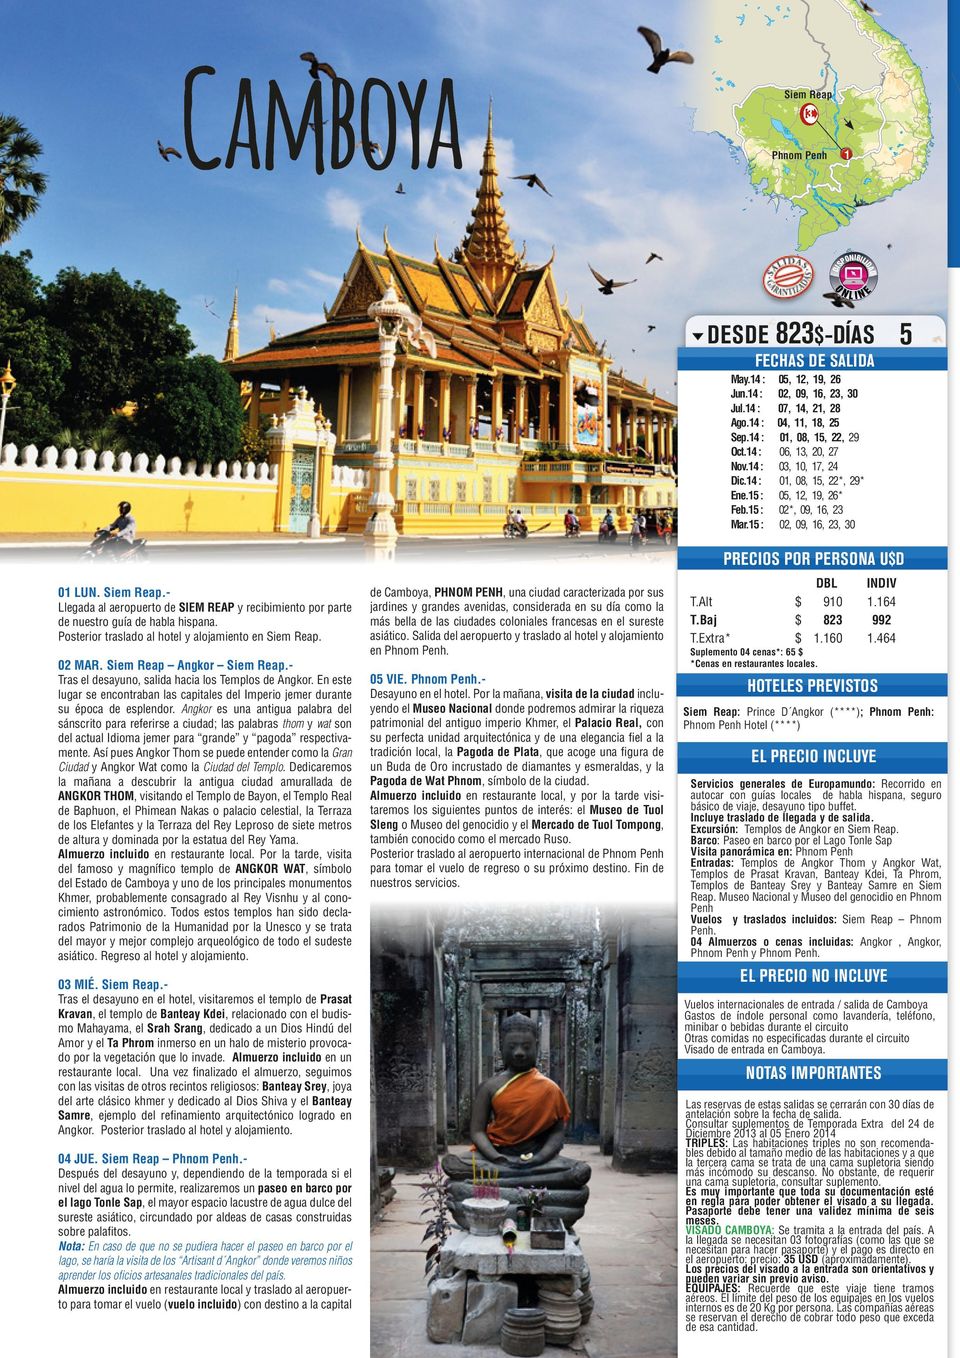 - Llegada al aeropuerto de SIEM REAP y recibimiento por parte de nuestro guía de habla hispana. Posterior traslado al hotel y alojamiento en Siem Reap. 0 MAR. Siem Reap Angkor Siem Reap.